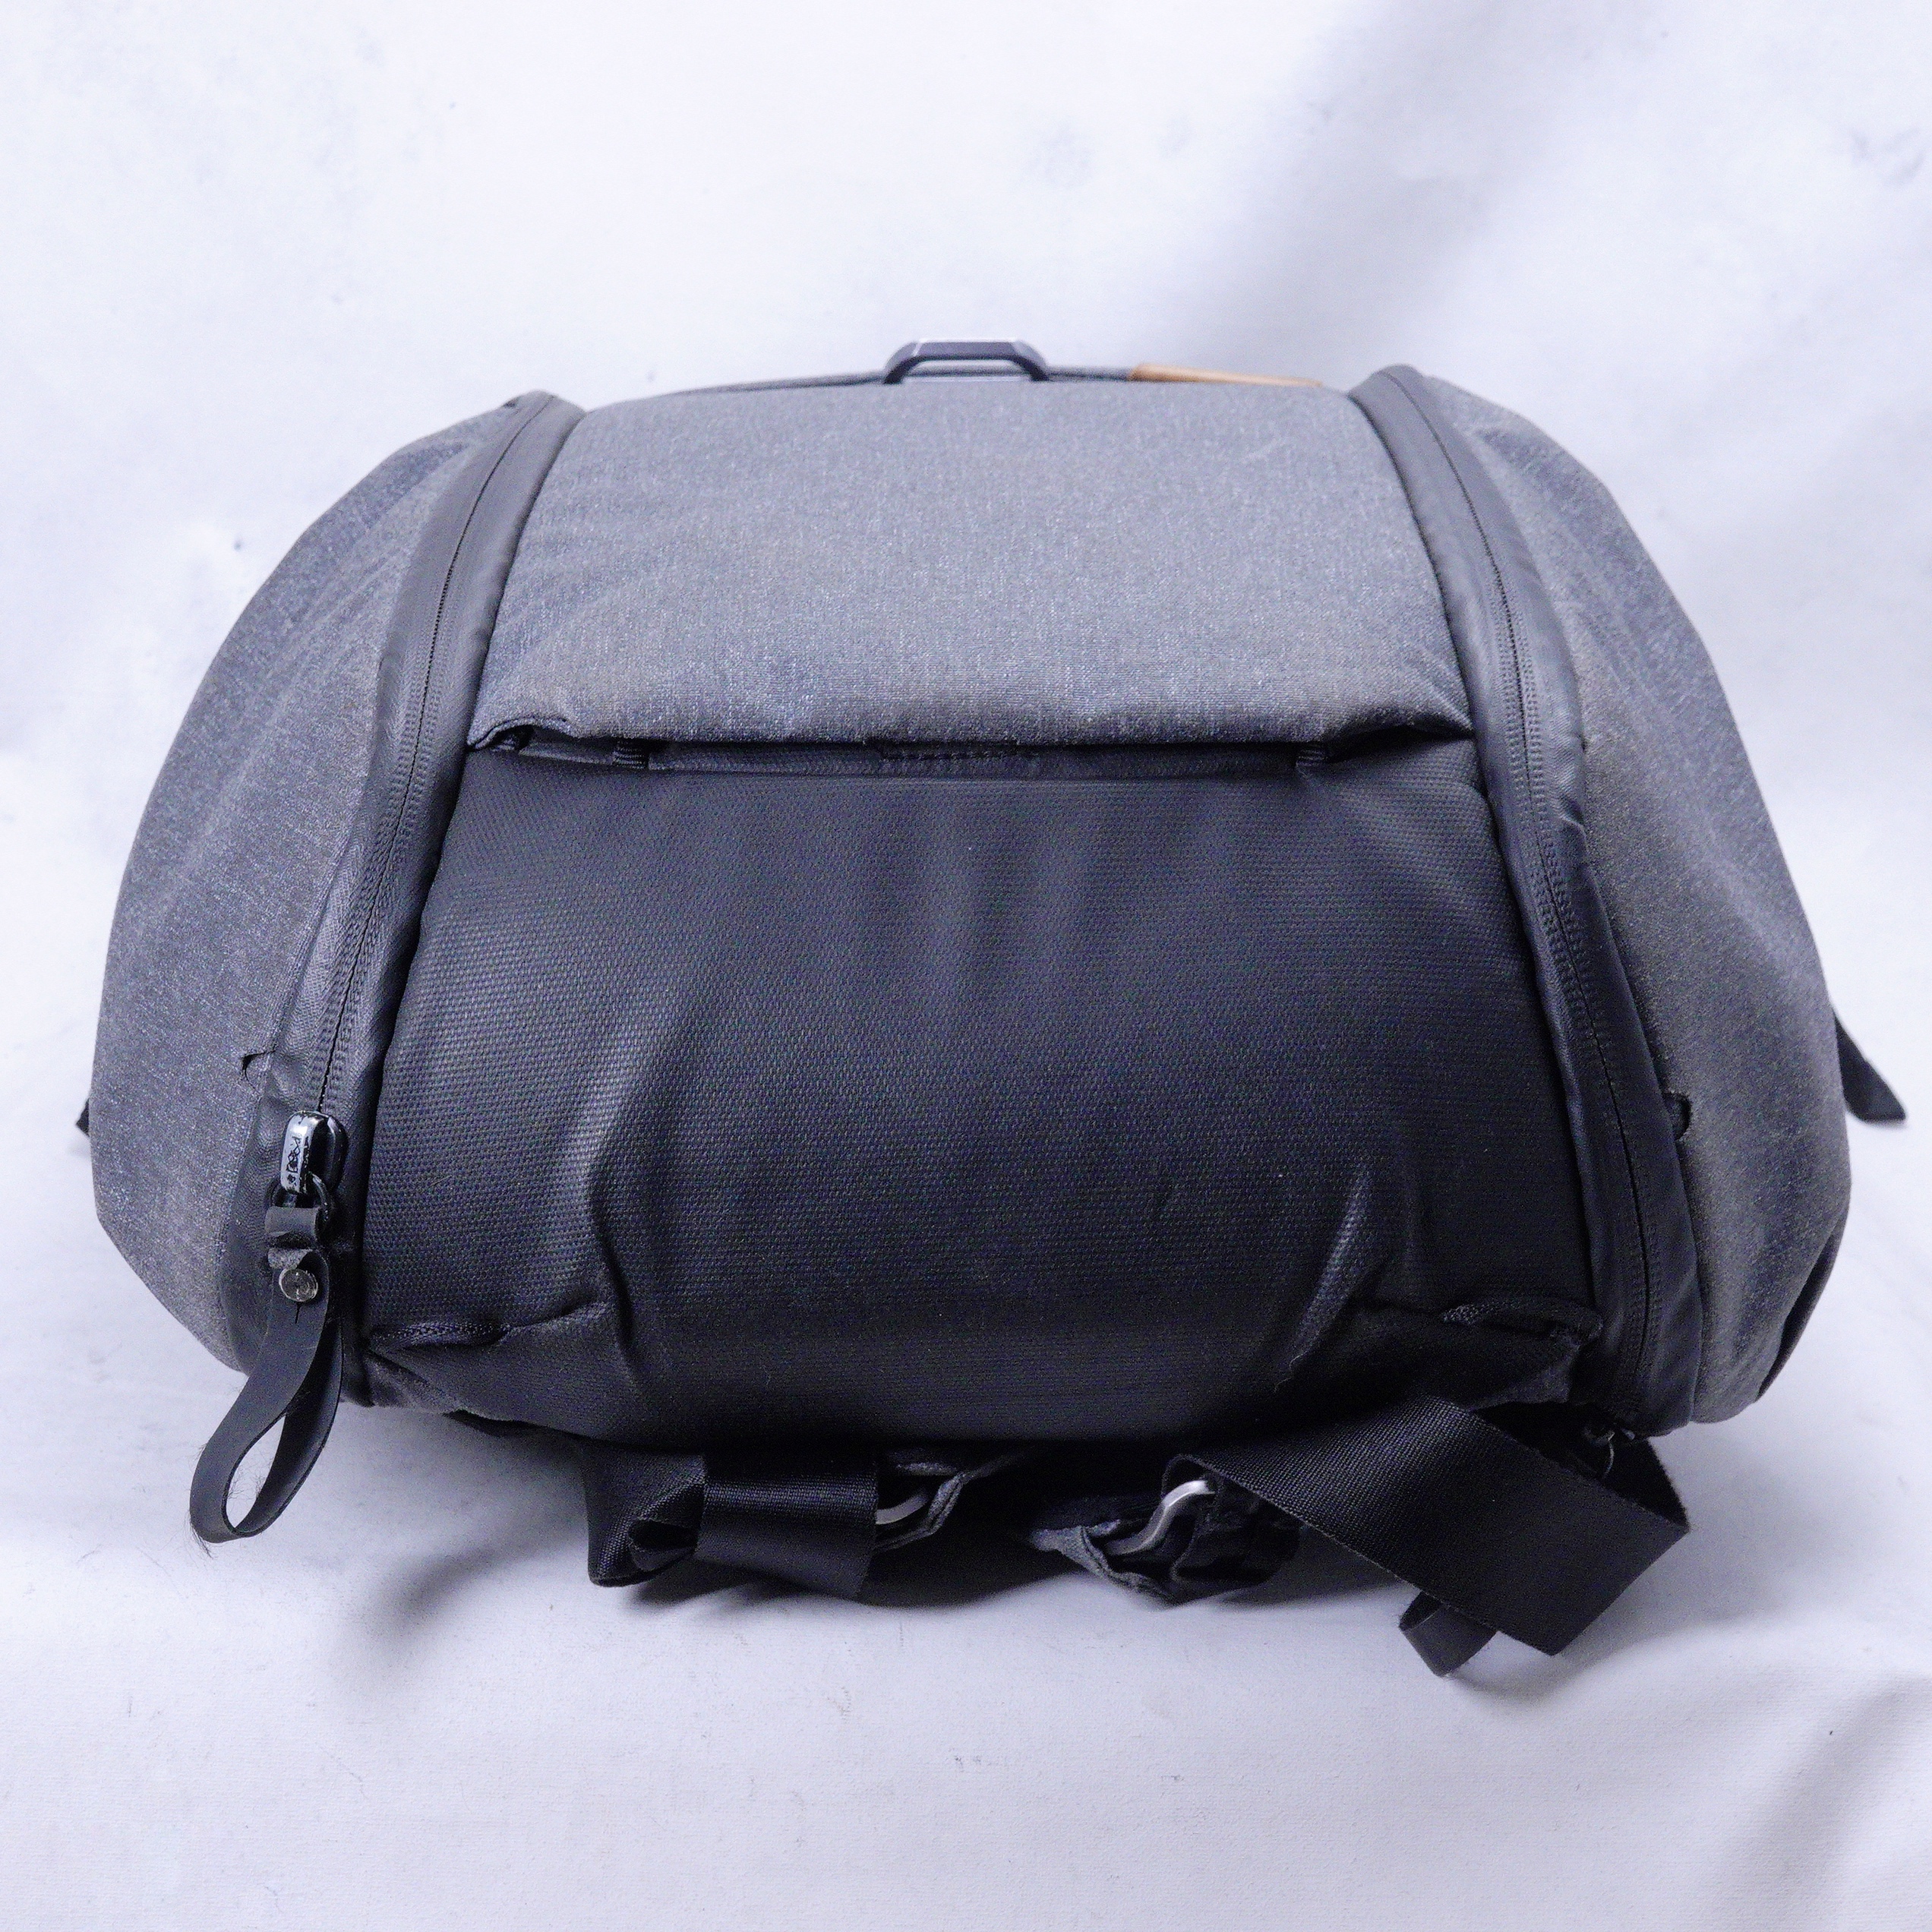 Mochila Peak Design Everyday Backpack v2 (20L Charcoal) - Usado